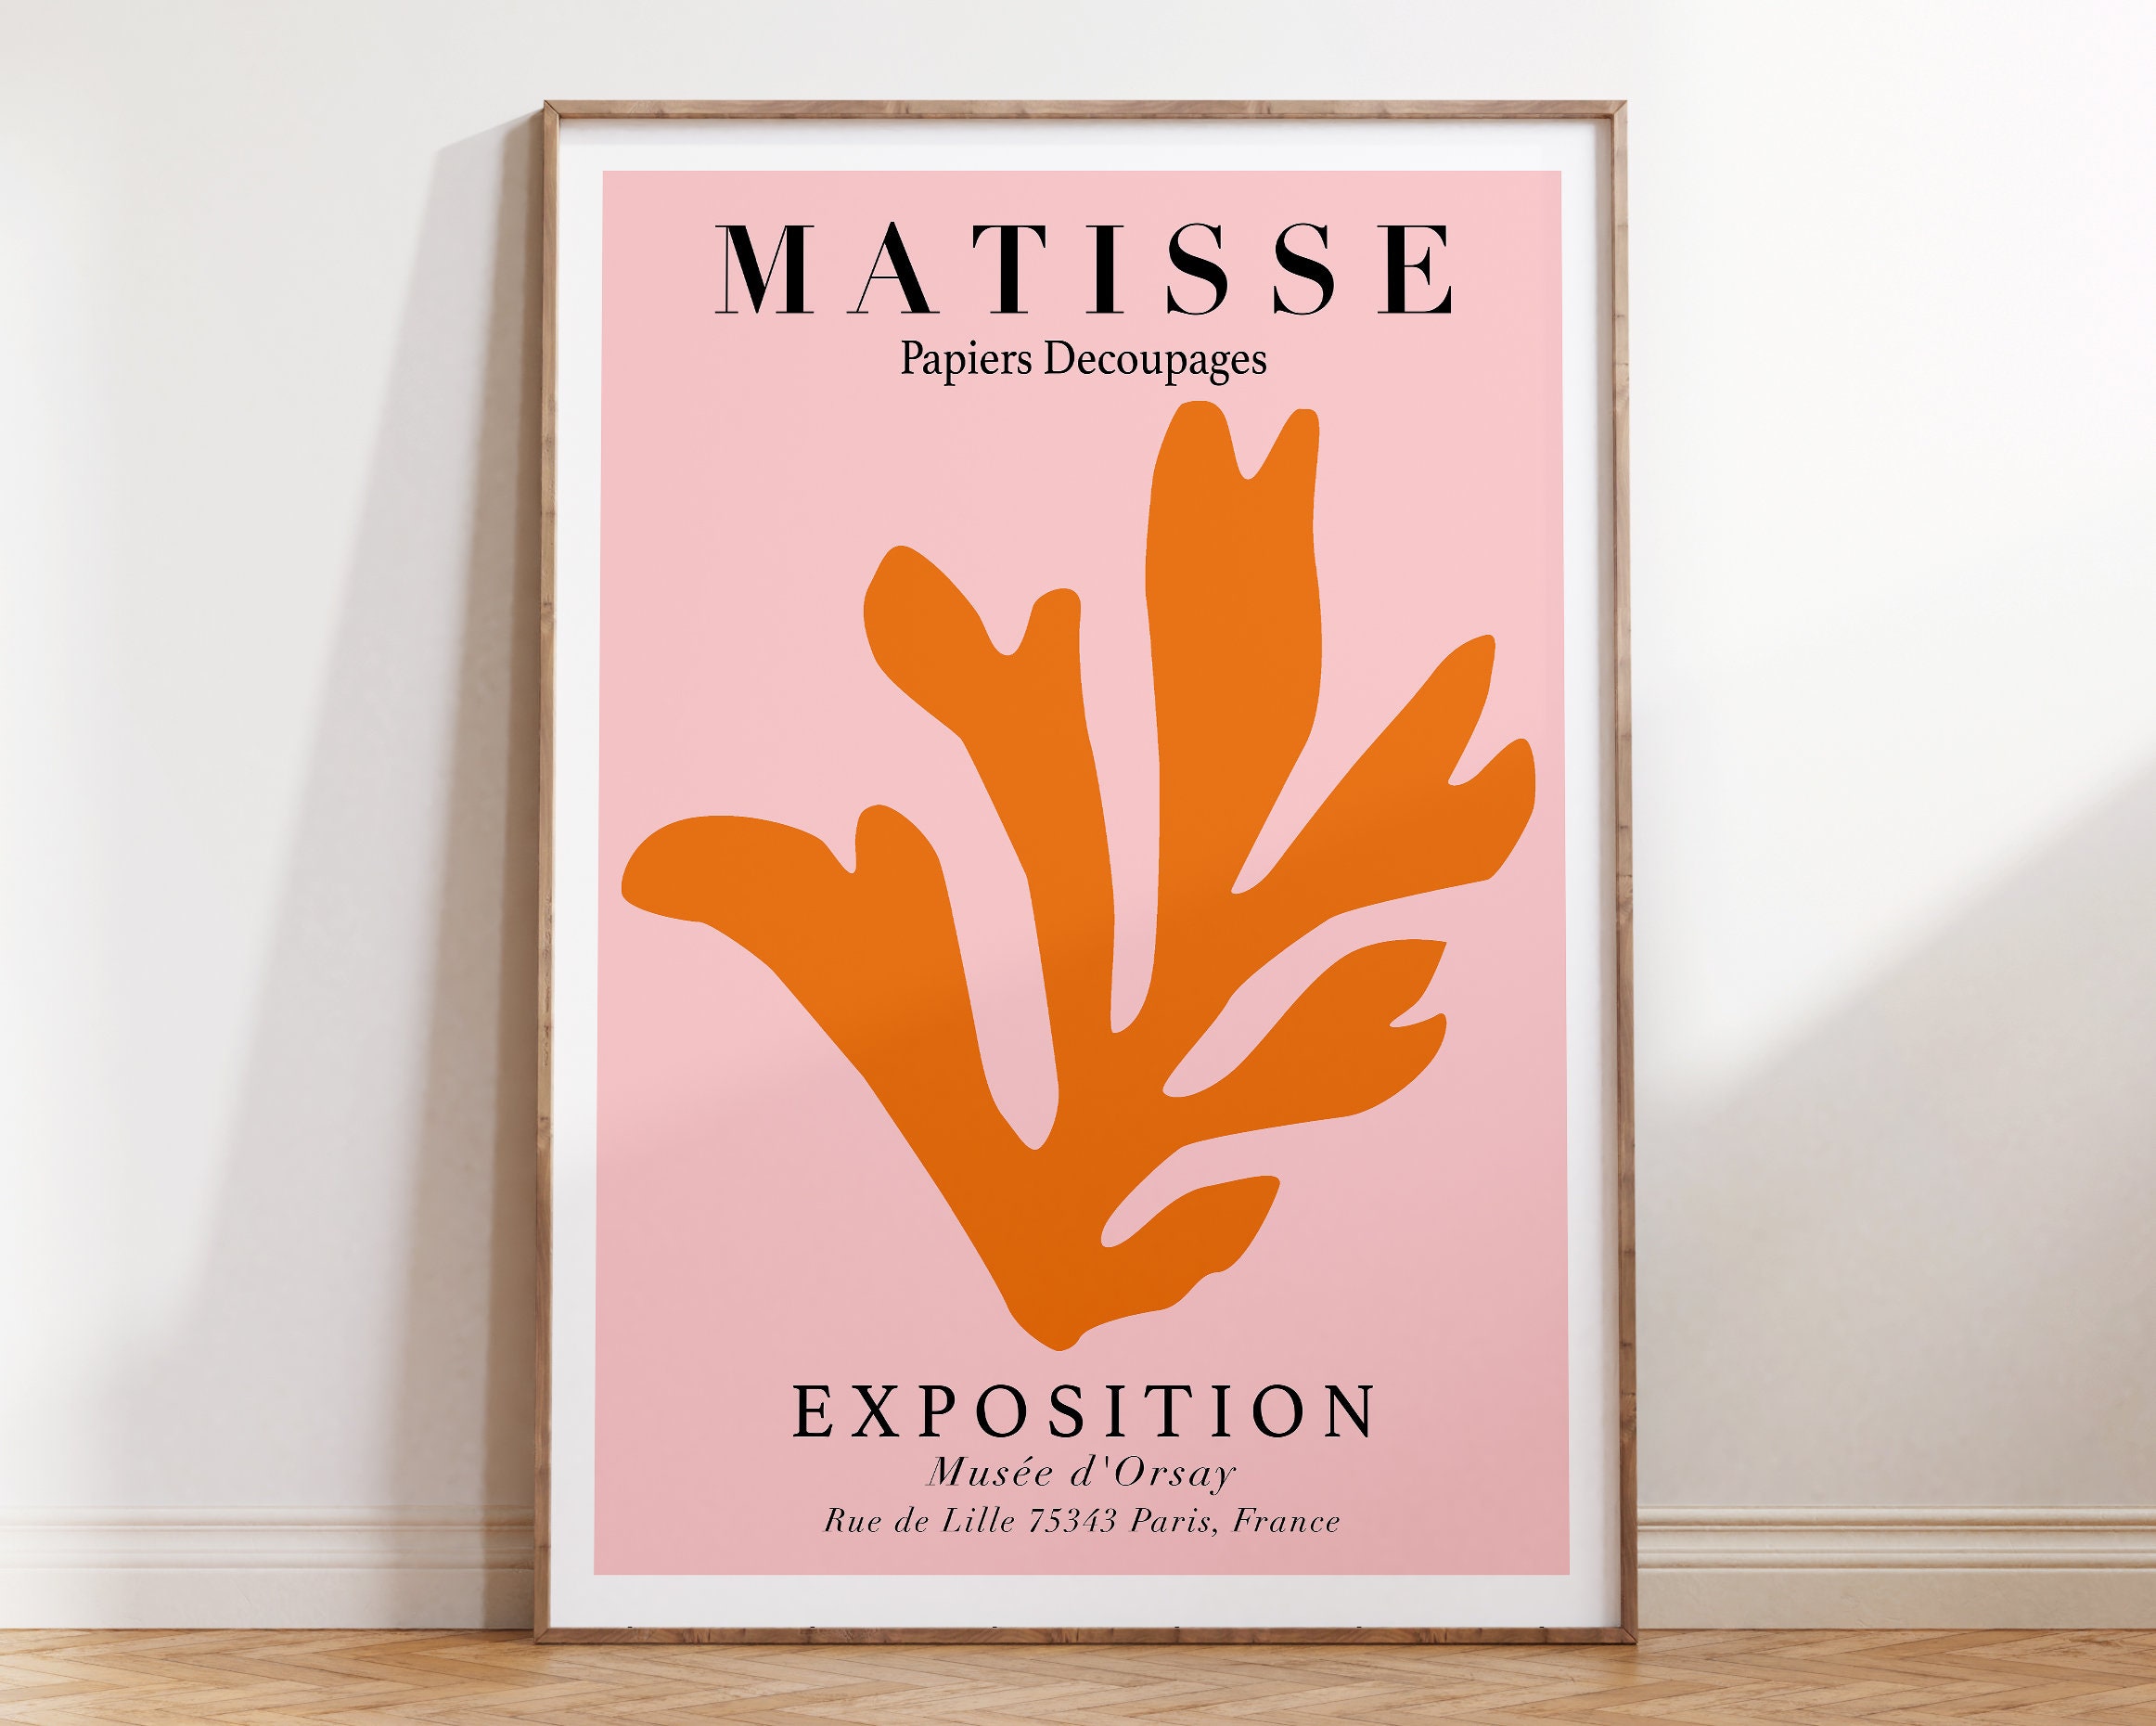 Plys dukke Kammer spisekammer Matisse Cut Out Leaf Poster Pink Orange Matisse Print - Etsy